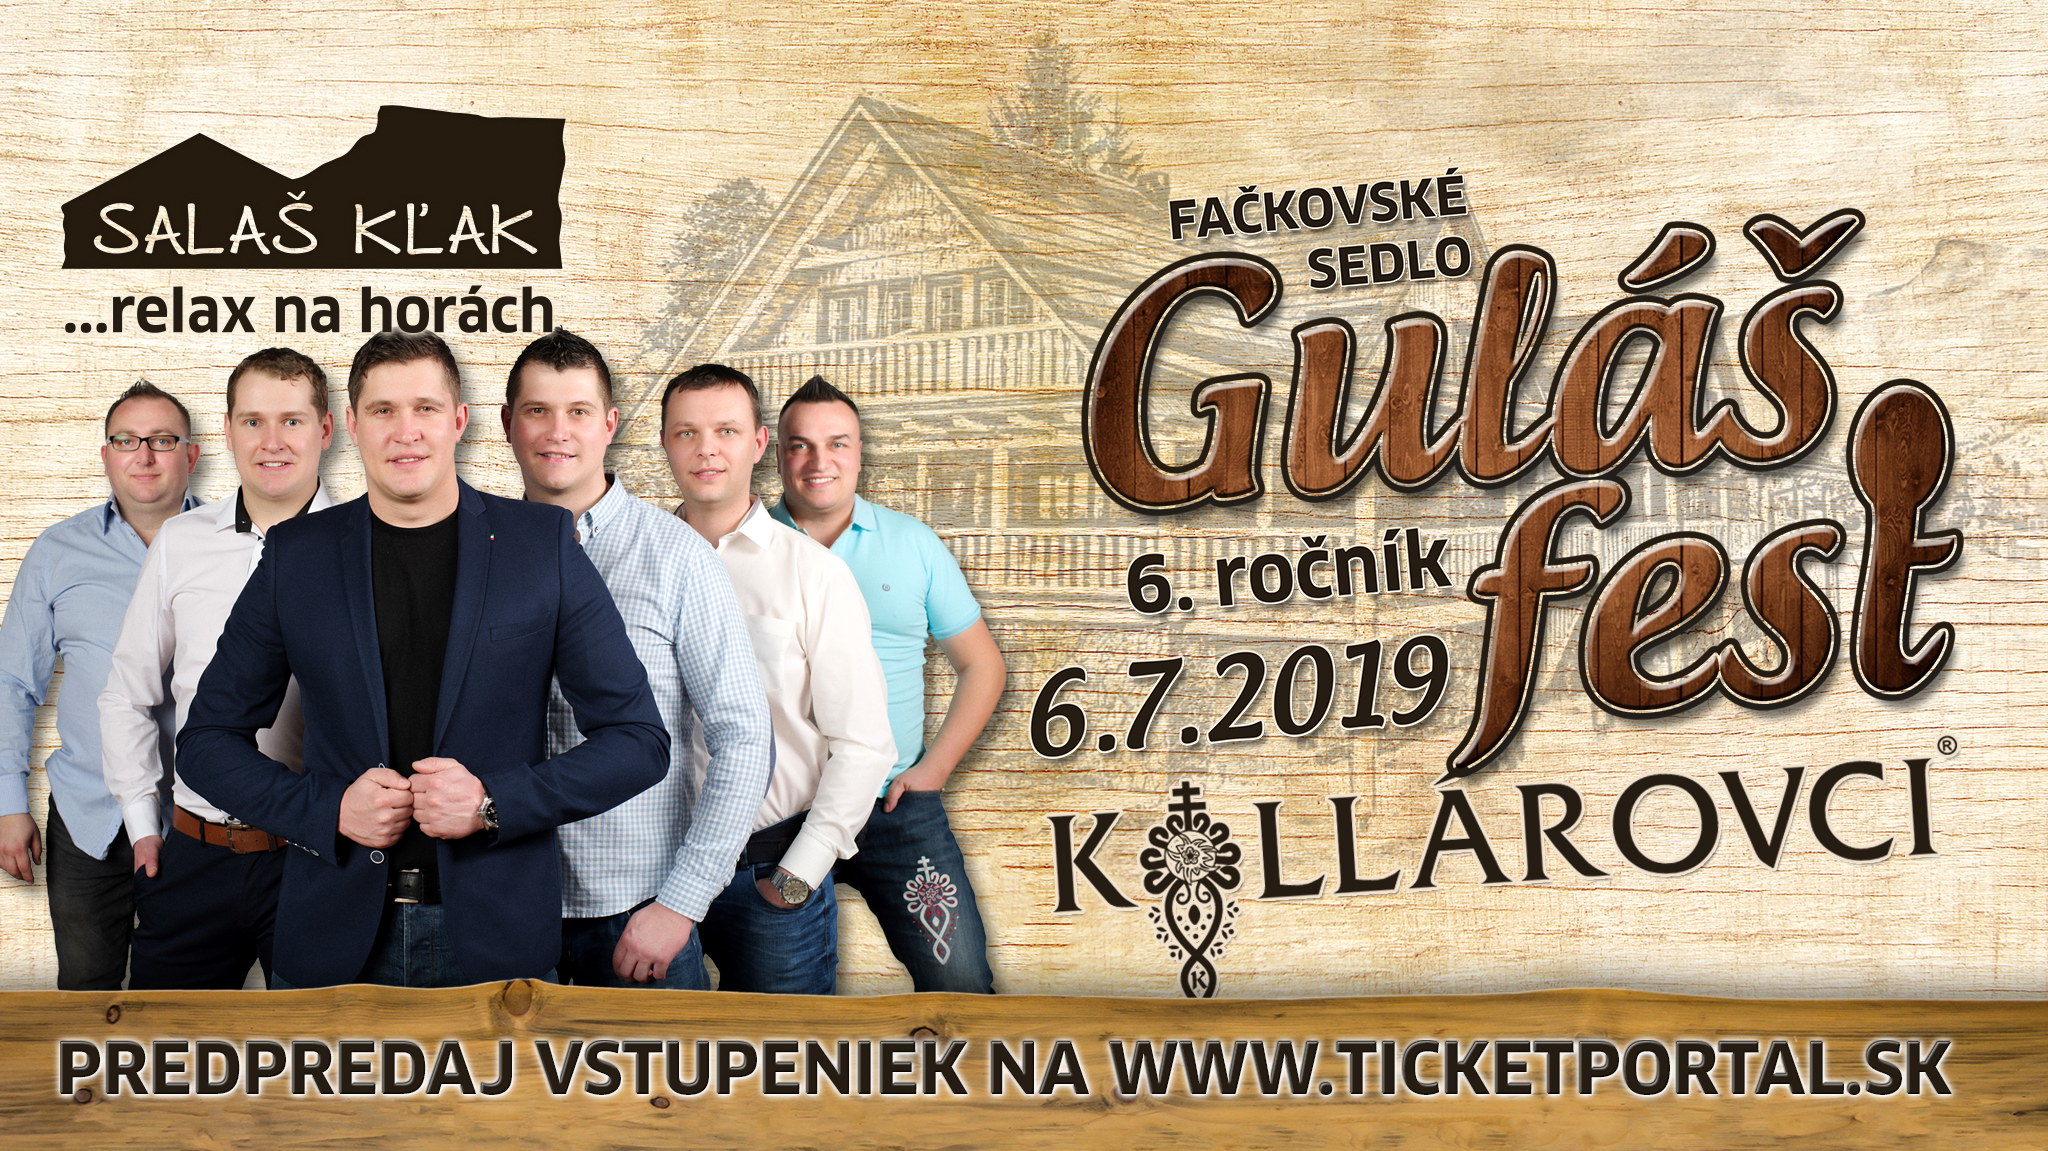 Gul Fest 2019 Fakovsk sedlo - 6. ronk s  Kollrovcami